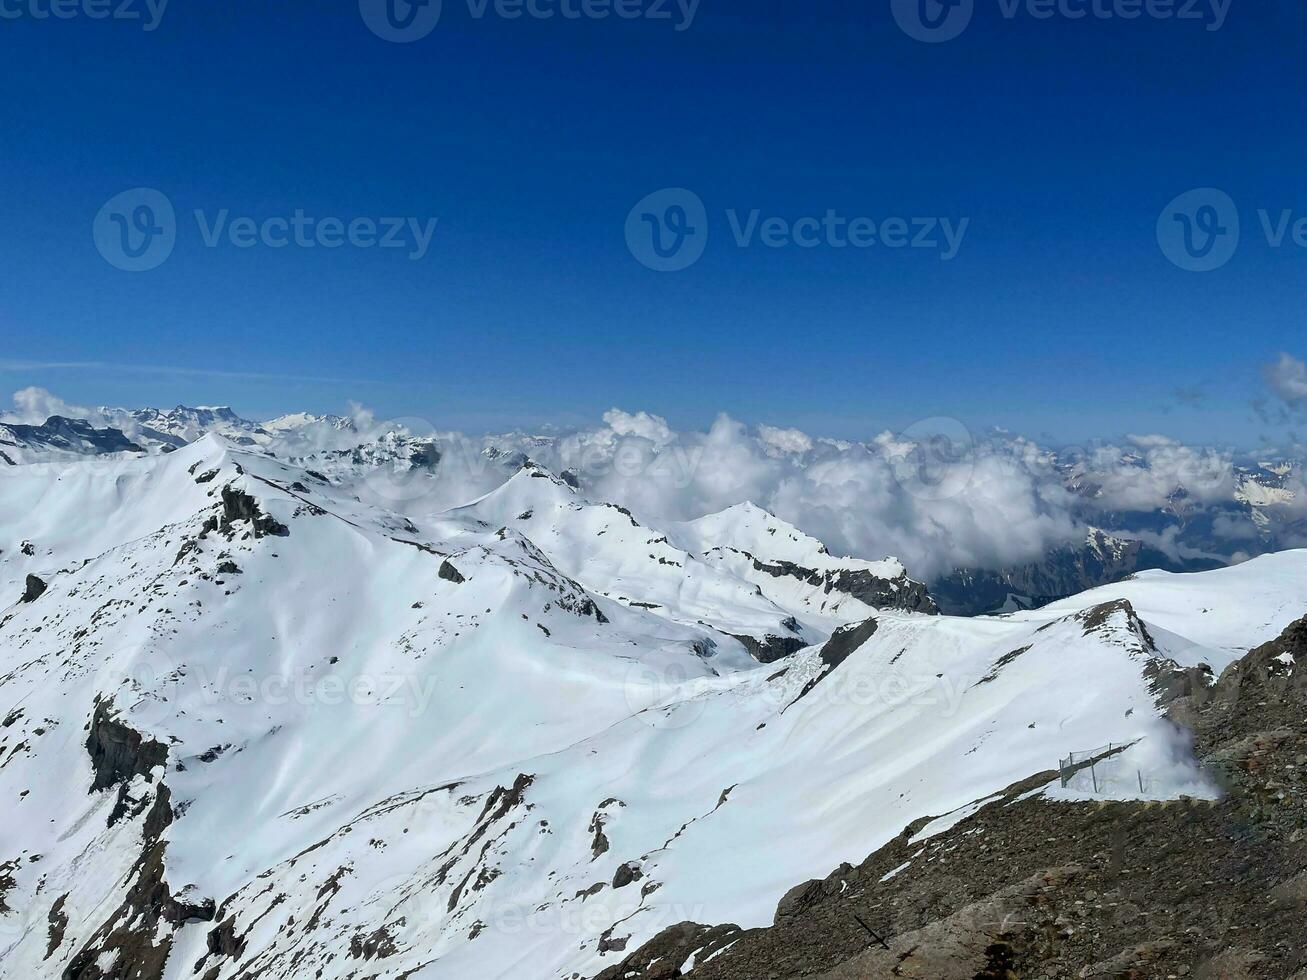 Zwitserland, de mooi besneeuwd pieken van de Alpen van titels berg visie. foto